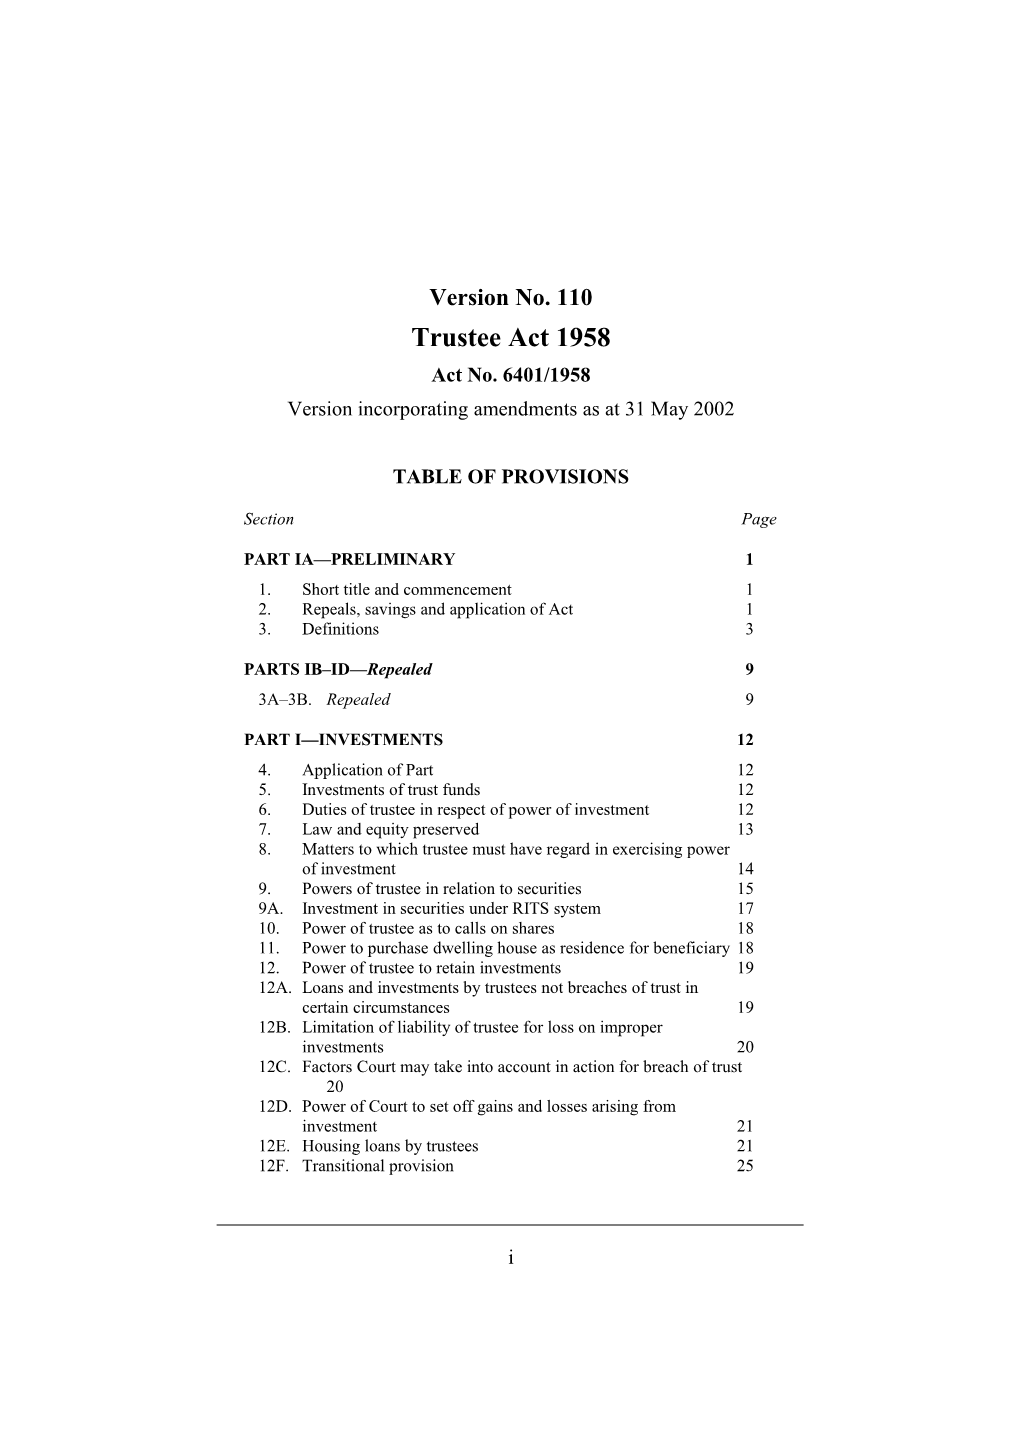 Version Incorporating Amendments As at 31 May 2002